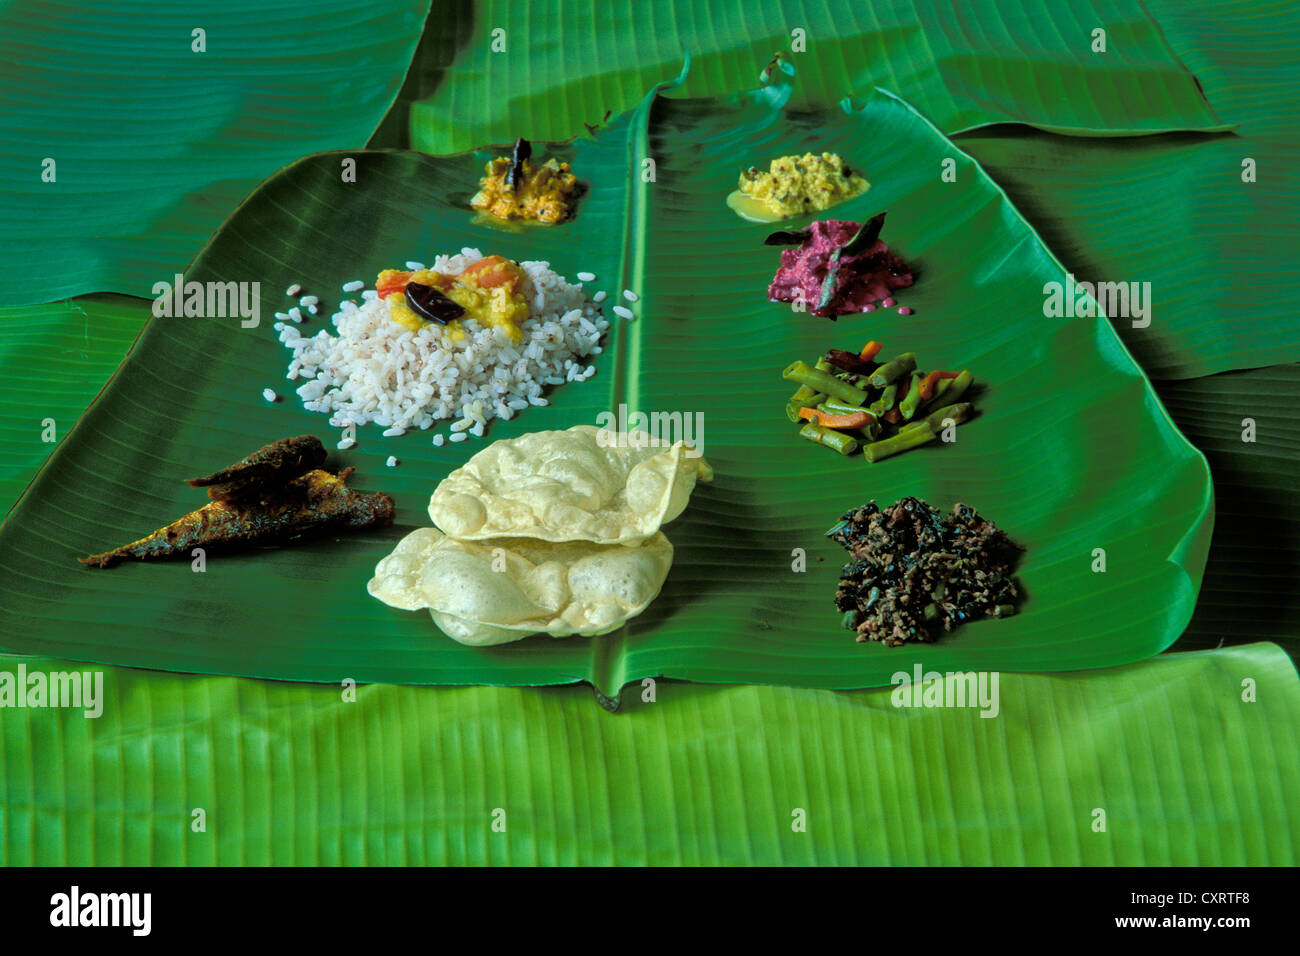 Thali kerala typique avec du riz, le dhal, poisson, légumes et papadam, servi sur une feuille de bananier palm, Kerala, Inde du Sud, Inde Banque D'Images